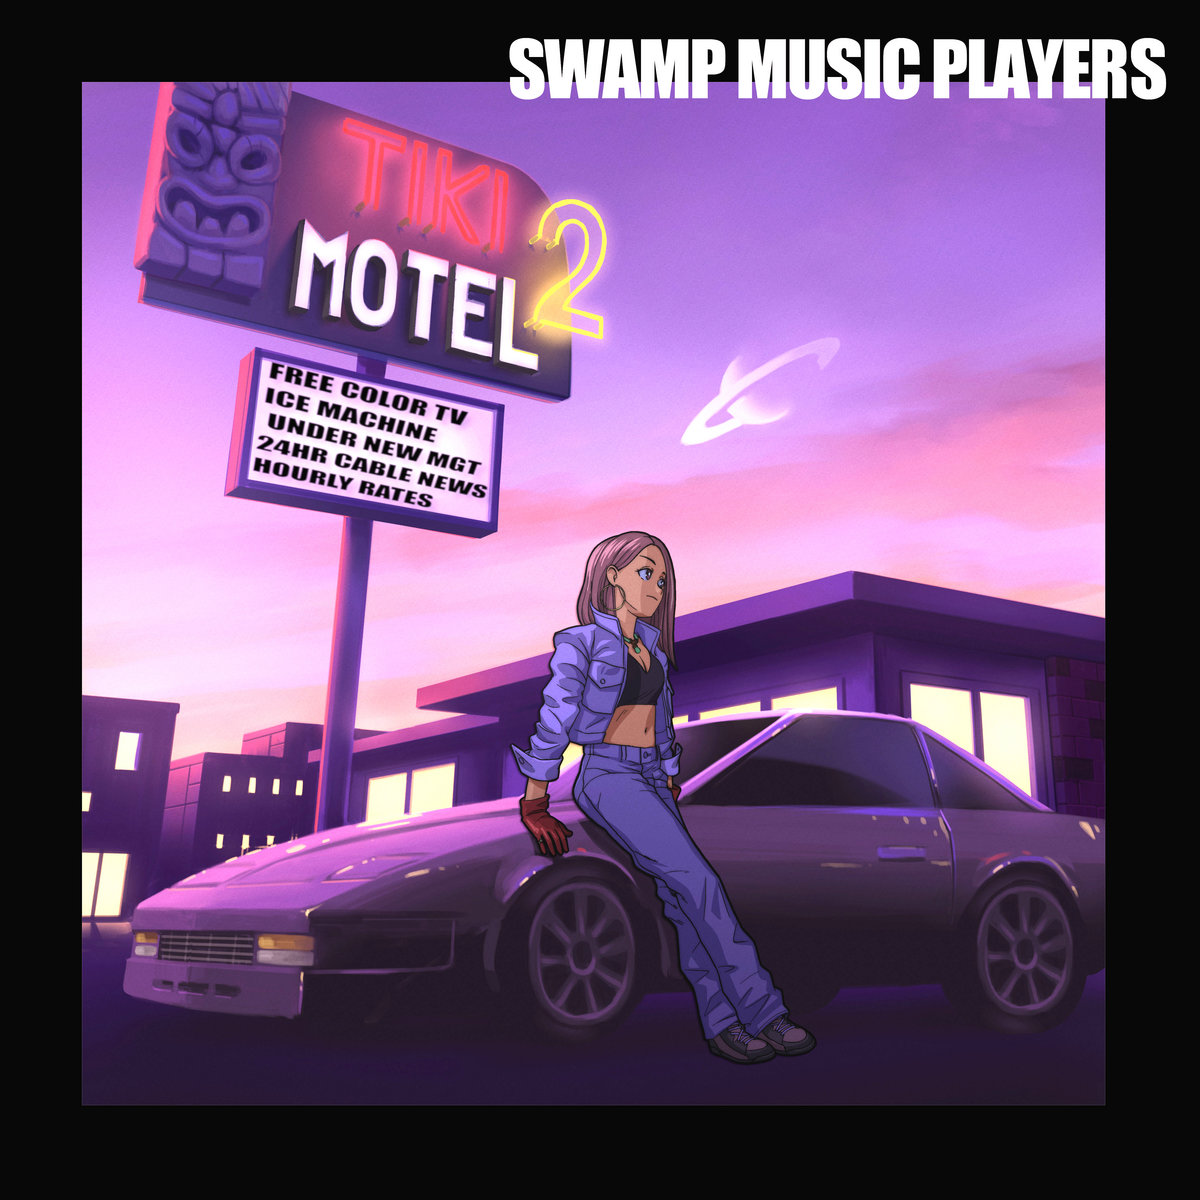 swamp-music-players-tiki-motel-2